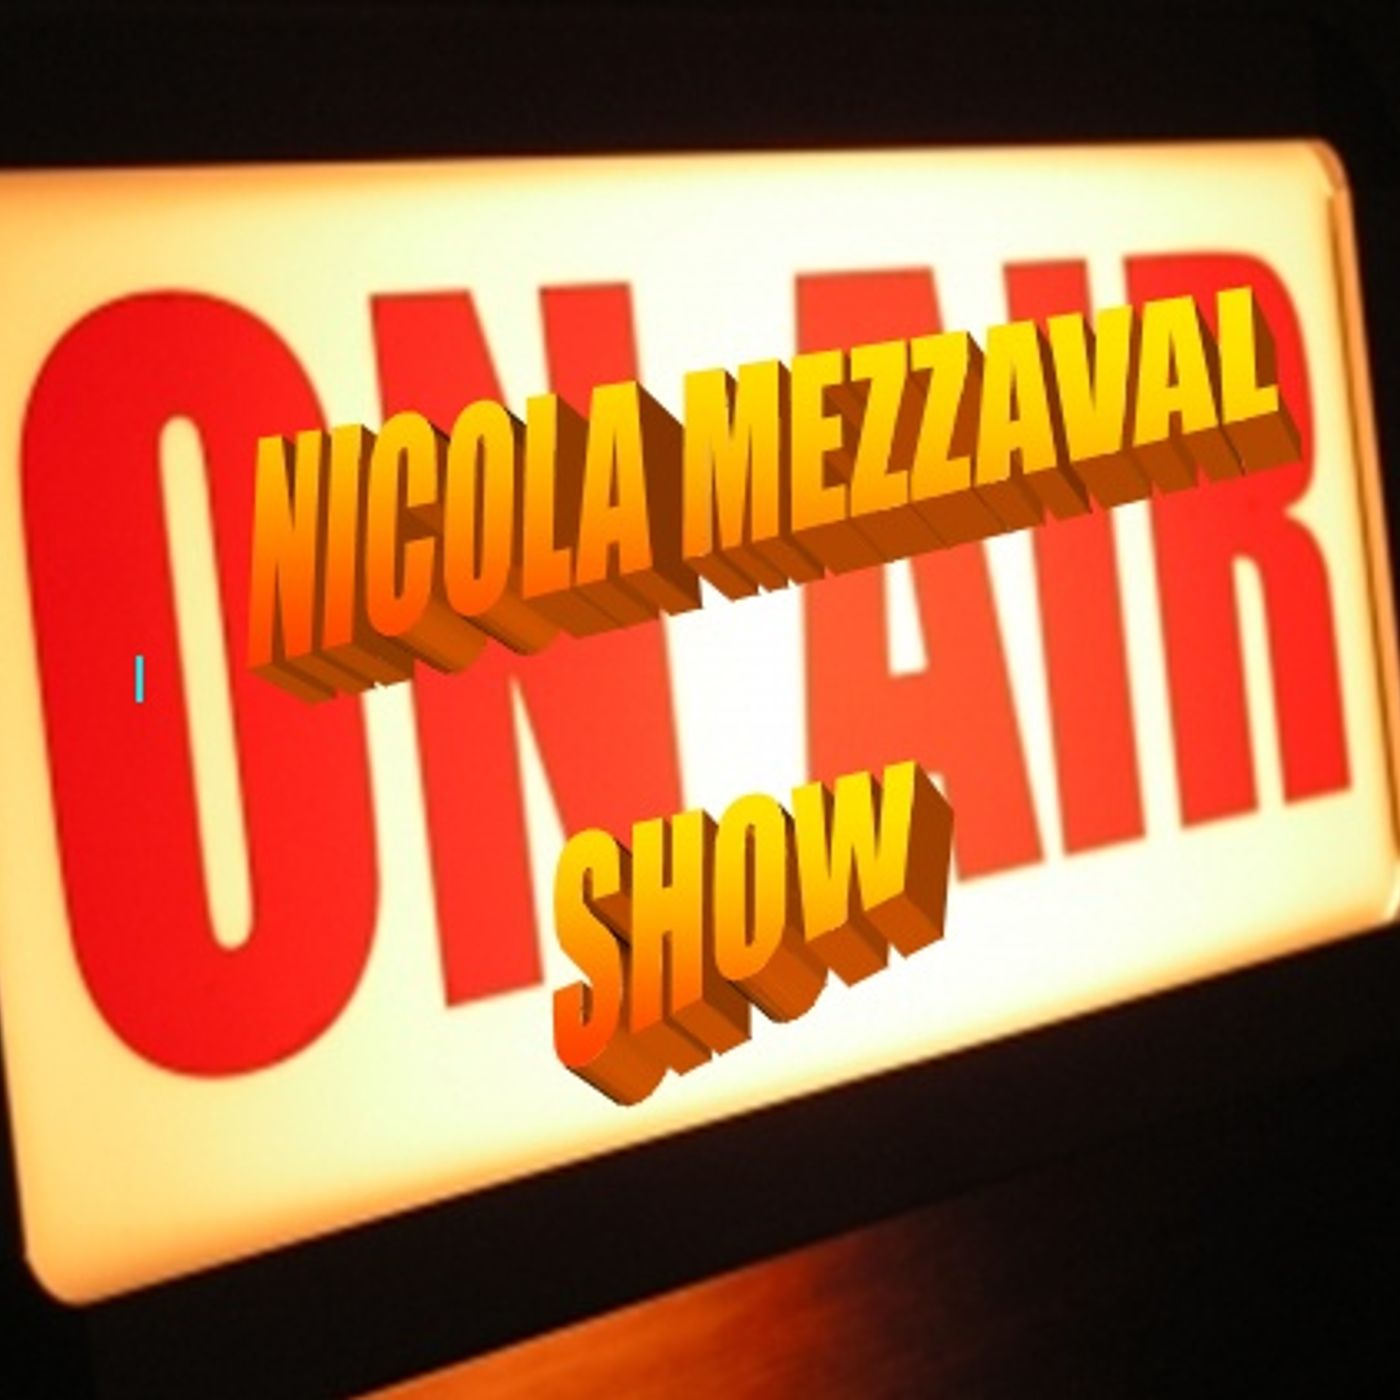 nicola mezzaval show's CRAZY RADIO ONE